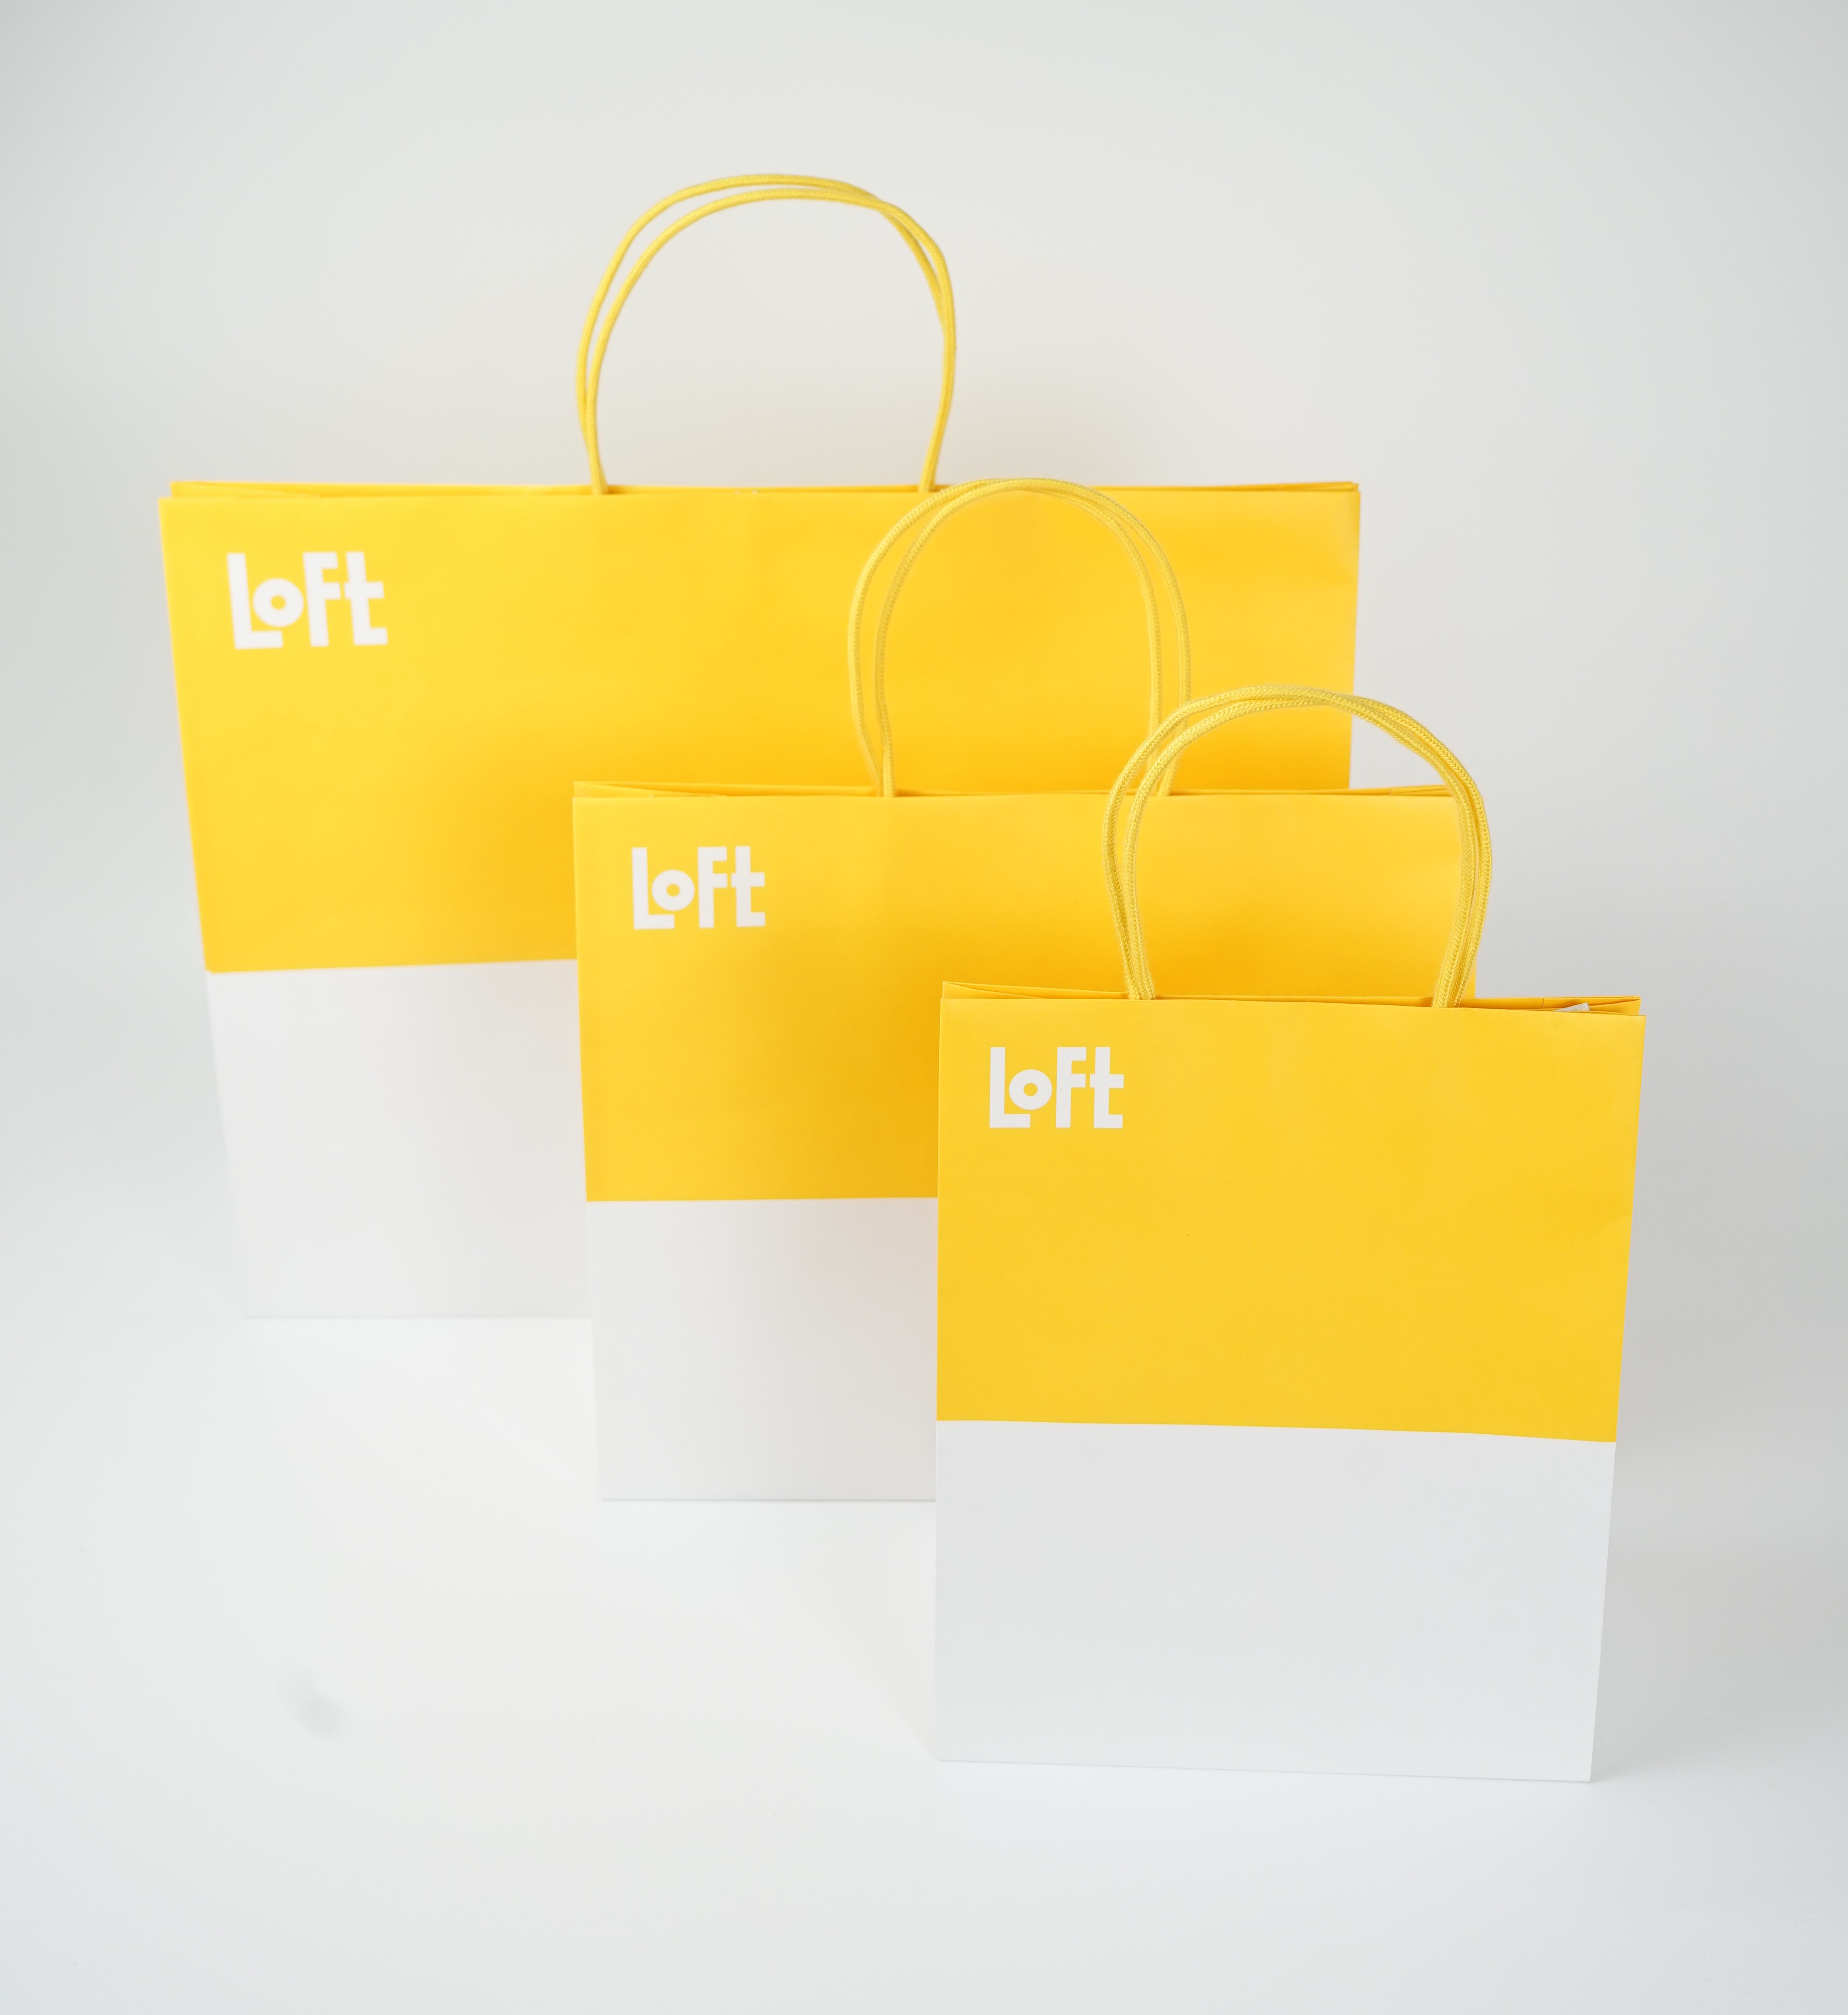 ロフト 7月よりロフト全店にて レジ袋およびギフトラッピング有料化スタート 株式会社ロフトのプレスリリース